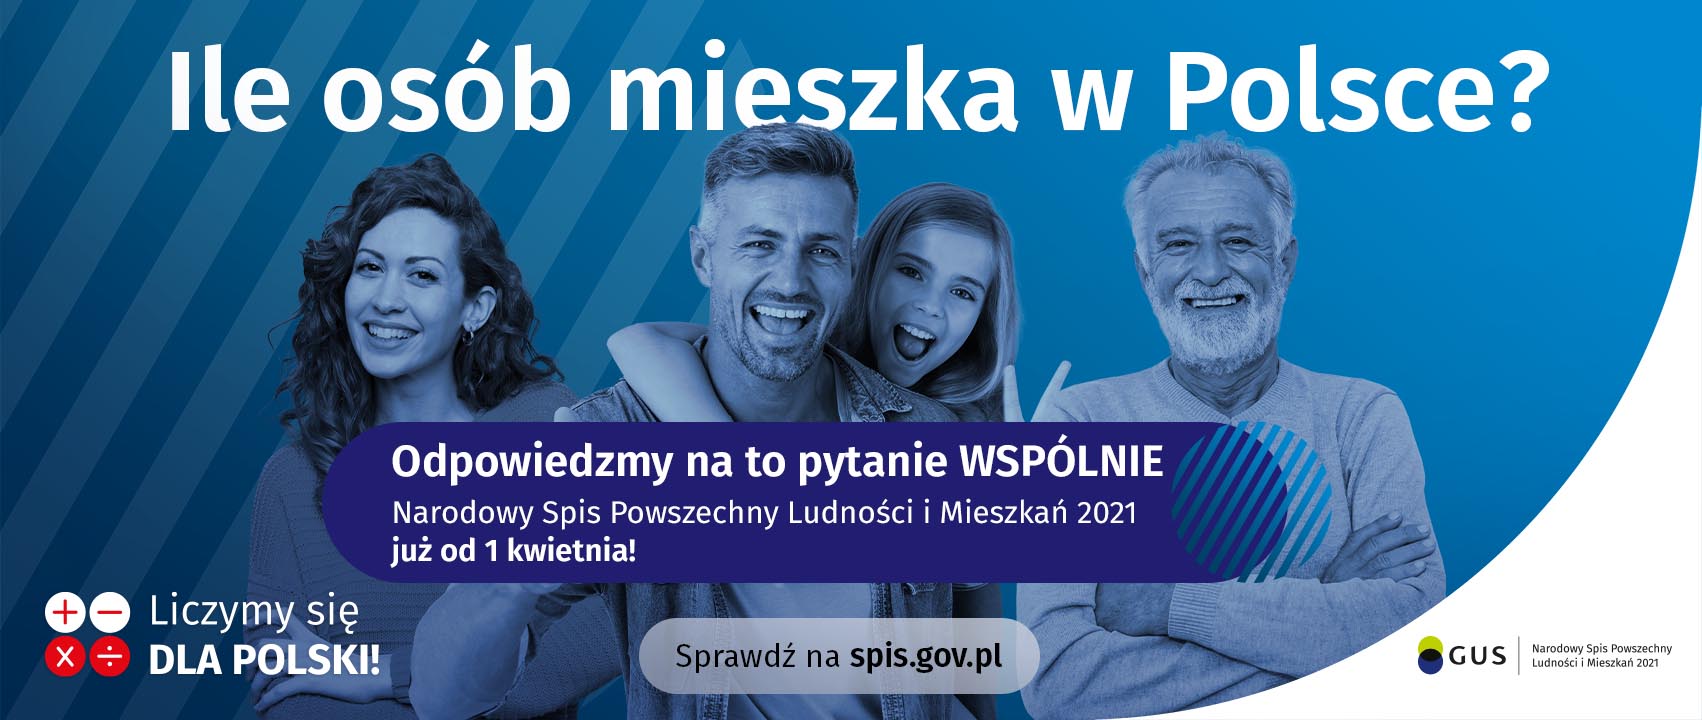 Cztery uśmiechnięte osoby na środku plakatu. Kobieta, dwóch mężczyzn i dziewczynka. Na górze napis: Ile osób mieszka w Polsce? Pod nimi napis: Odpowiedzmy na to pytanie wspólnie. Narodowy Spis Powszechny Ludności i Mieszkań 2021 już od 1 kwietnia!